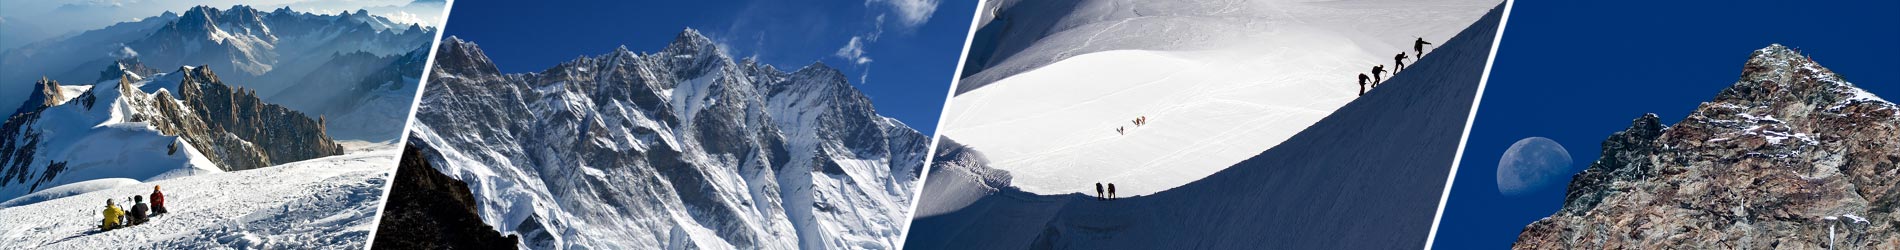 Альпинизм и восхождения в горах